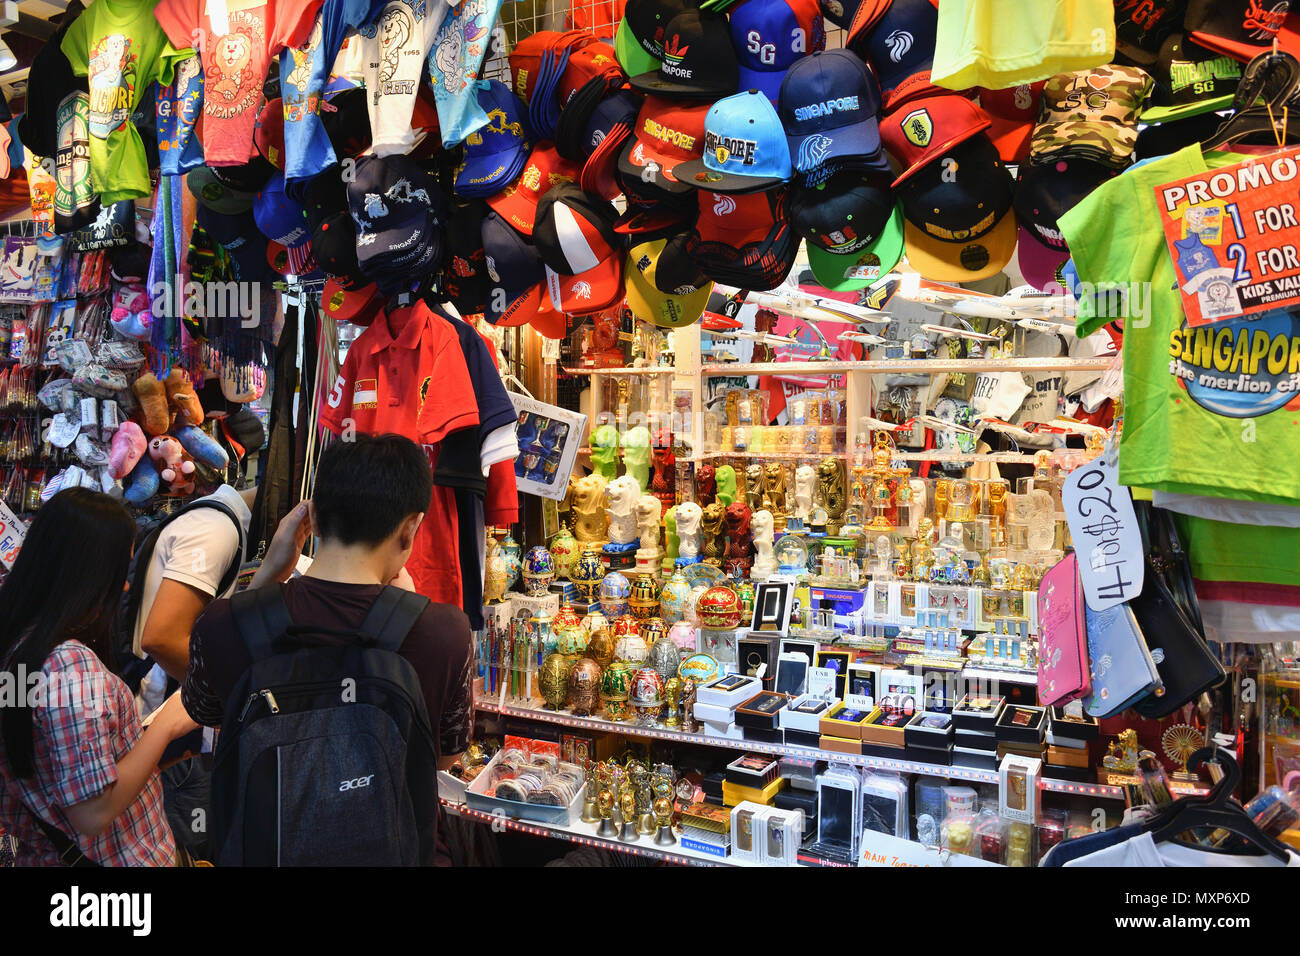 Singapur Bugis Street. Ein Shop verkauft Souvenirs in diesem Budget-freundliche Mall, vor allem merlion - themed sourvenirs. Stockfoto